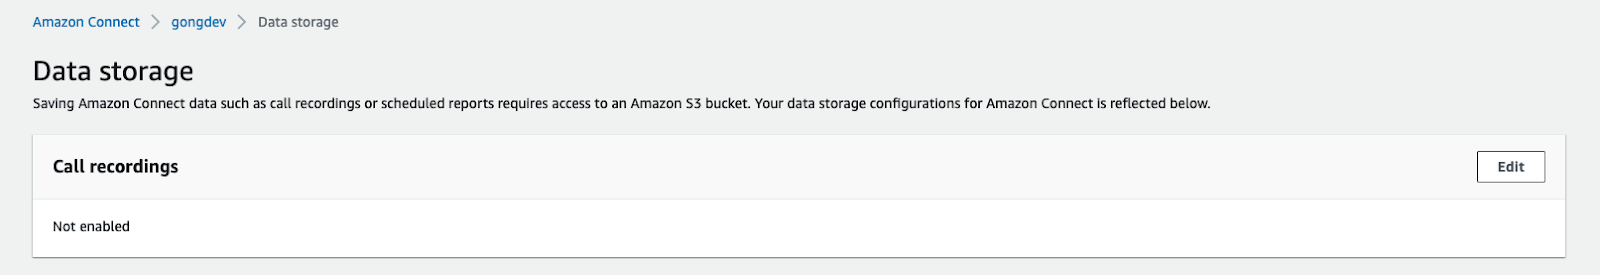 AmazonConnect_data_storage2